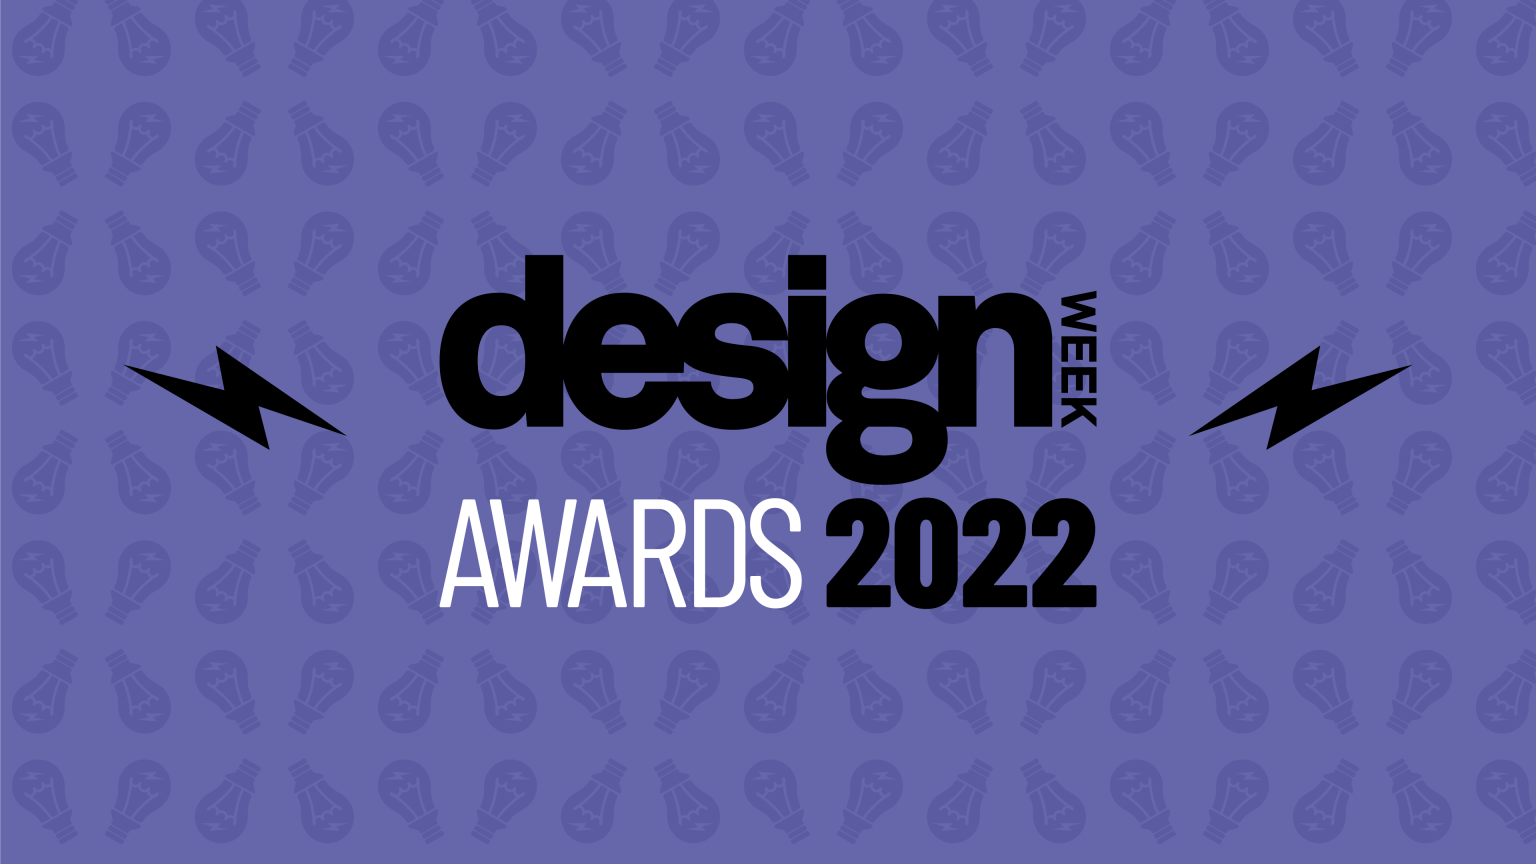 Design Week Awards 2022 - deadline extended